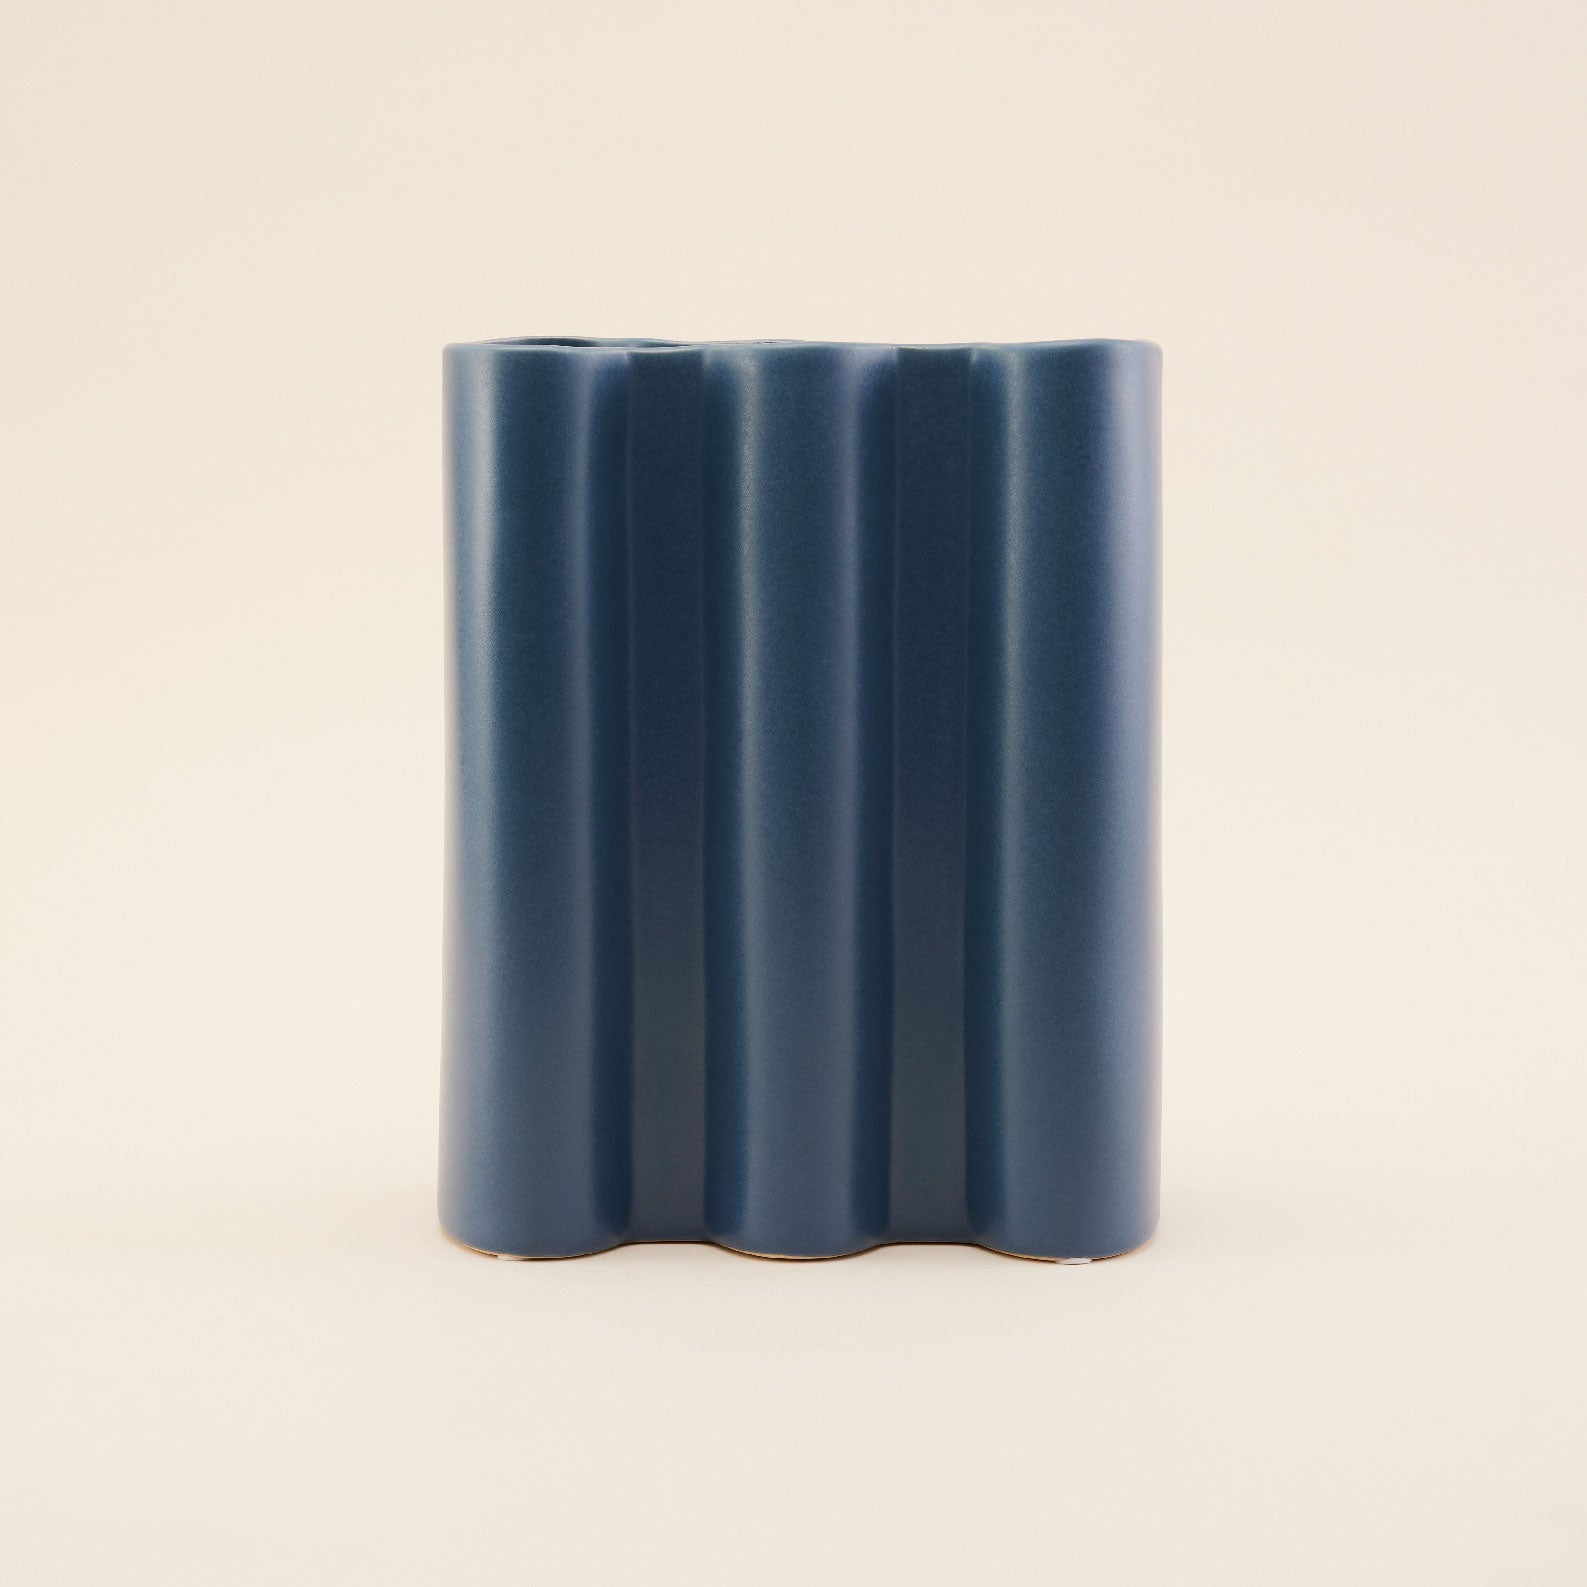 Dark Blue Puzzle Ceramic Vase | แจกัน เซรามิก